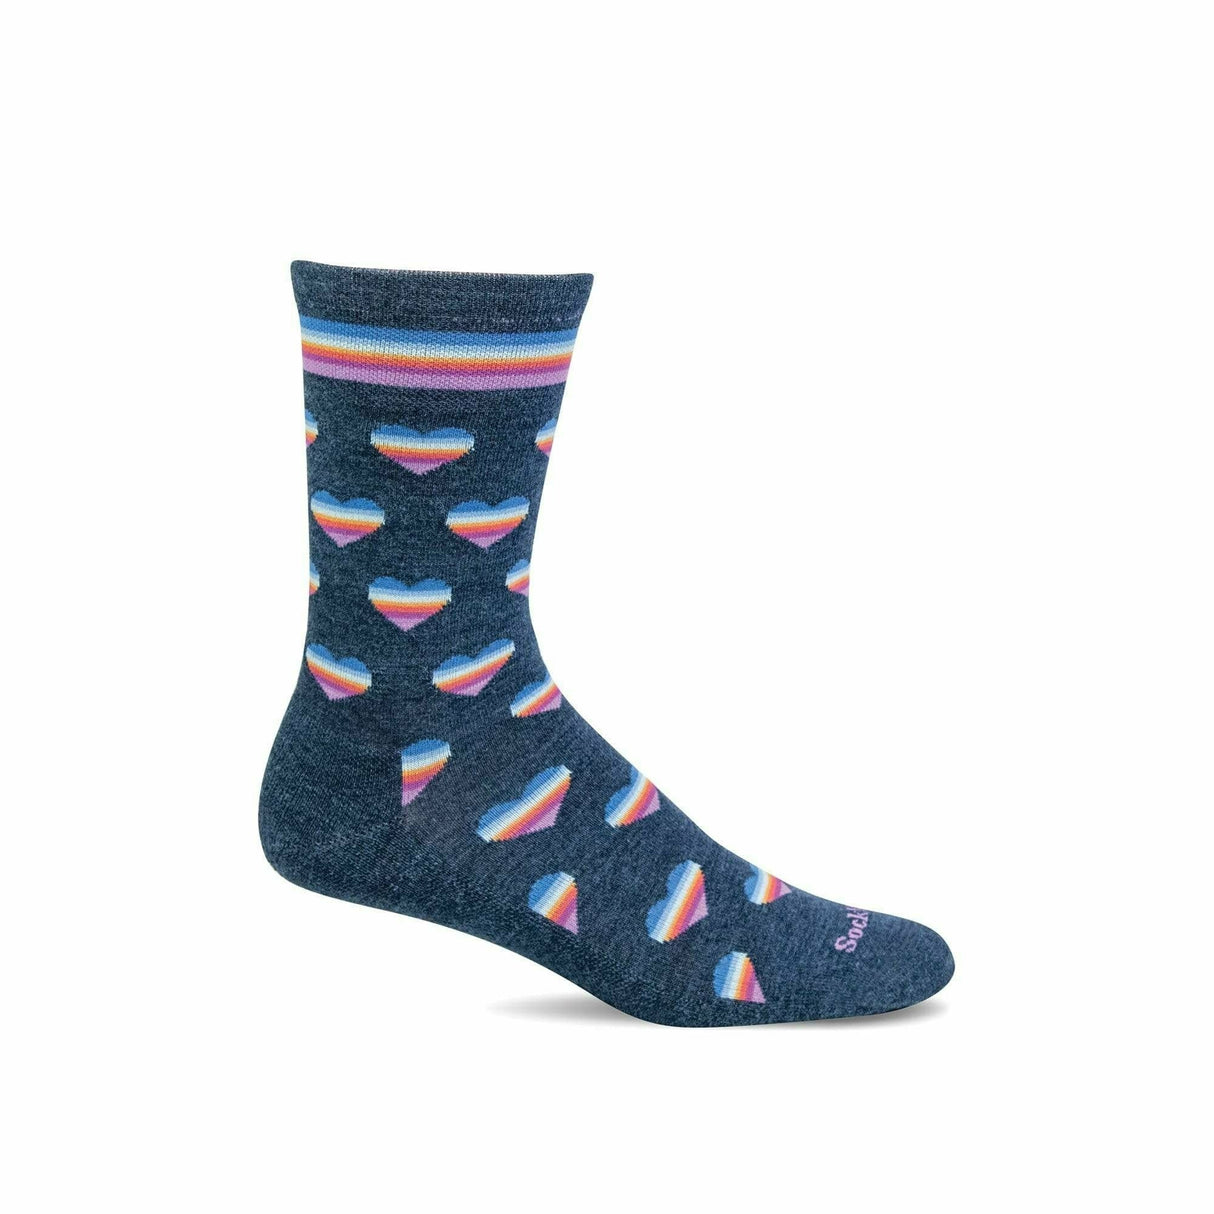 Sockwell Womens Love-a-Lot Essential Comfort Crew Socks  -  Small/Medium / Denim